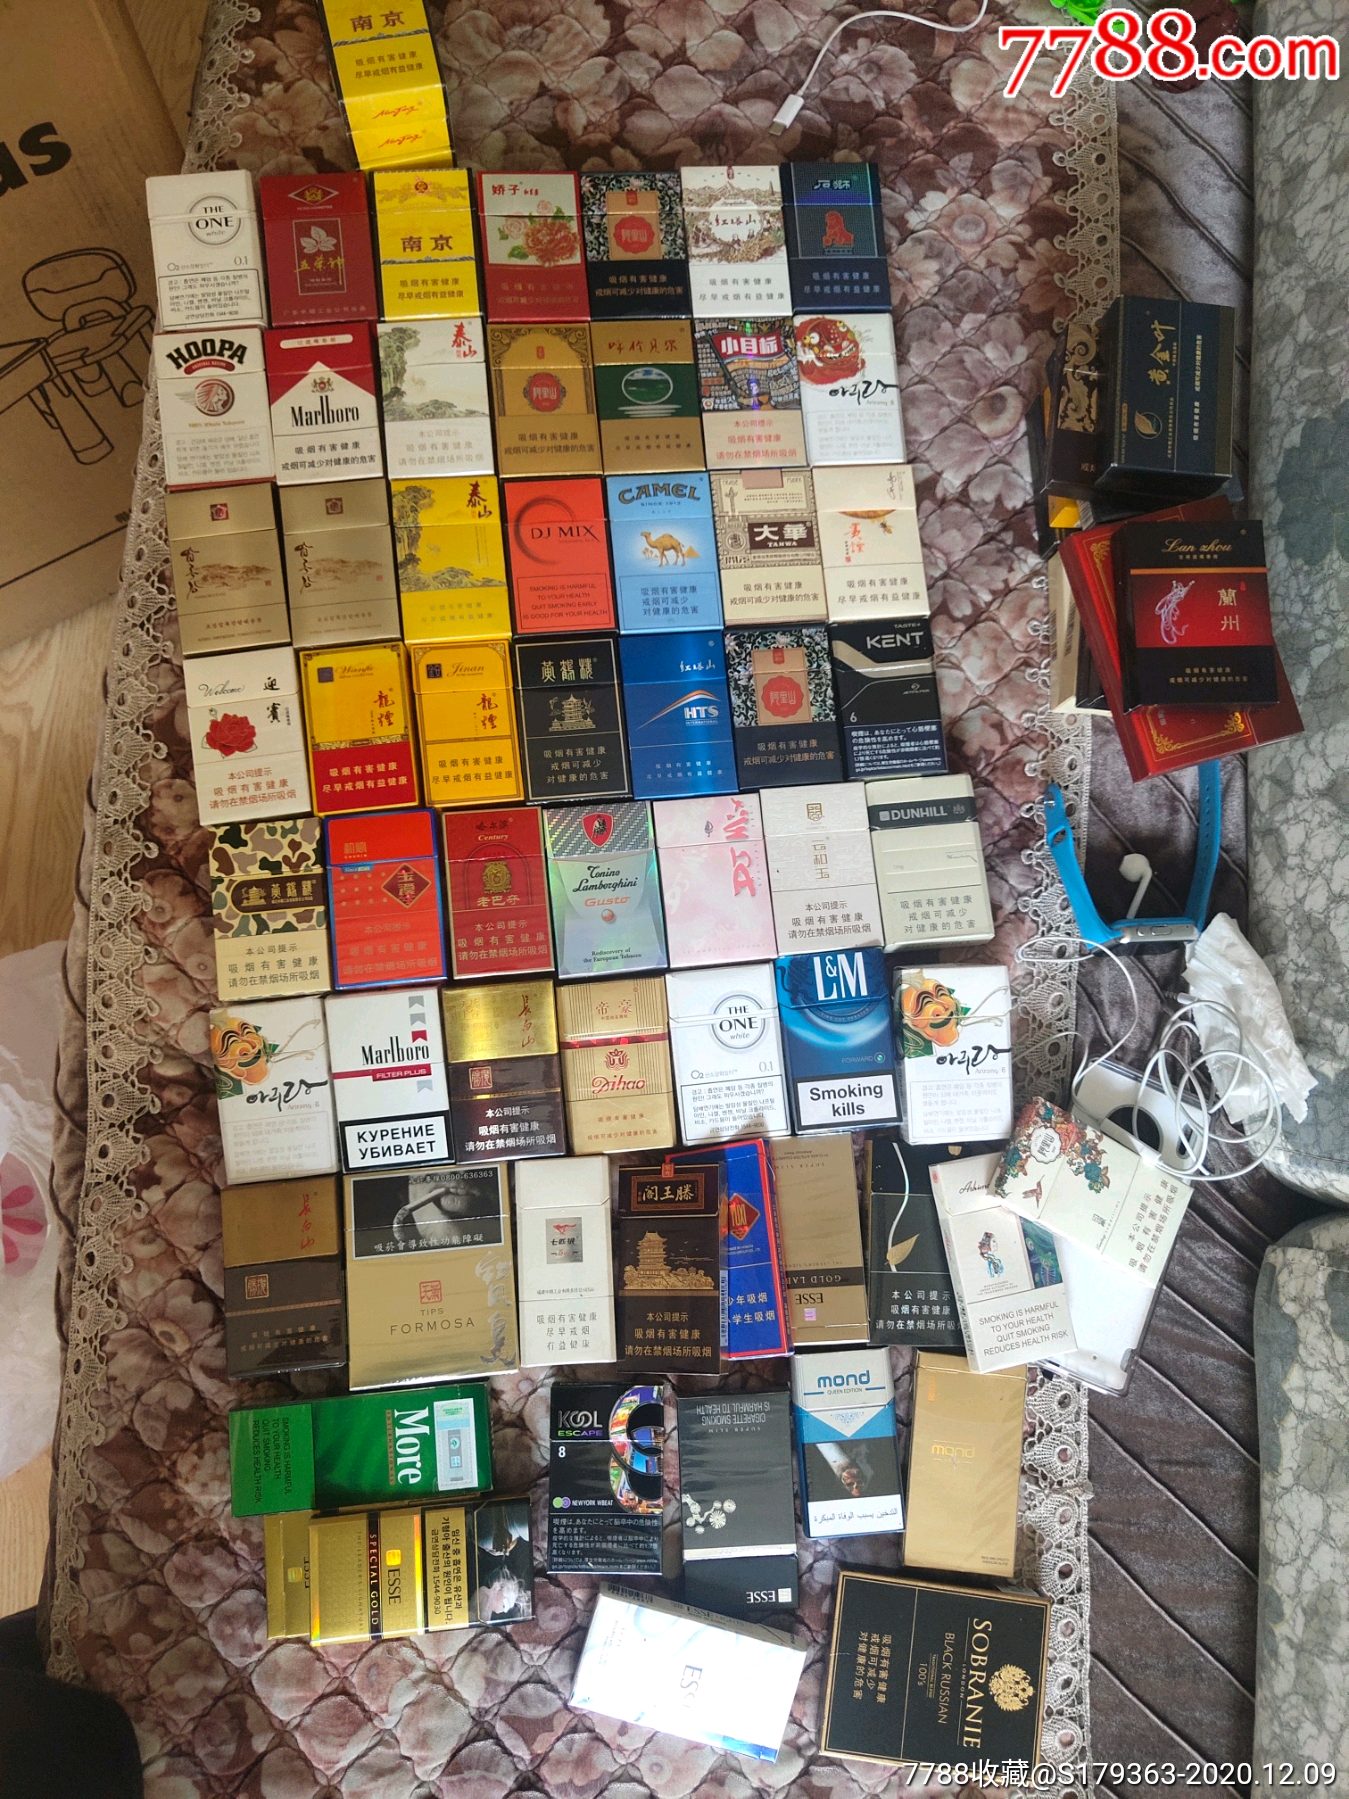 烟盒一堆,很多老版